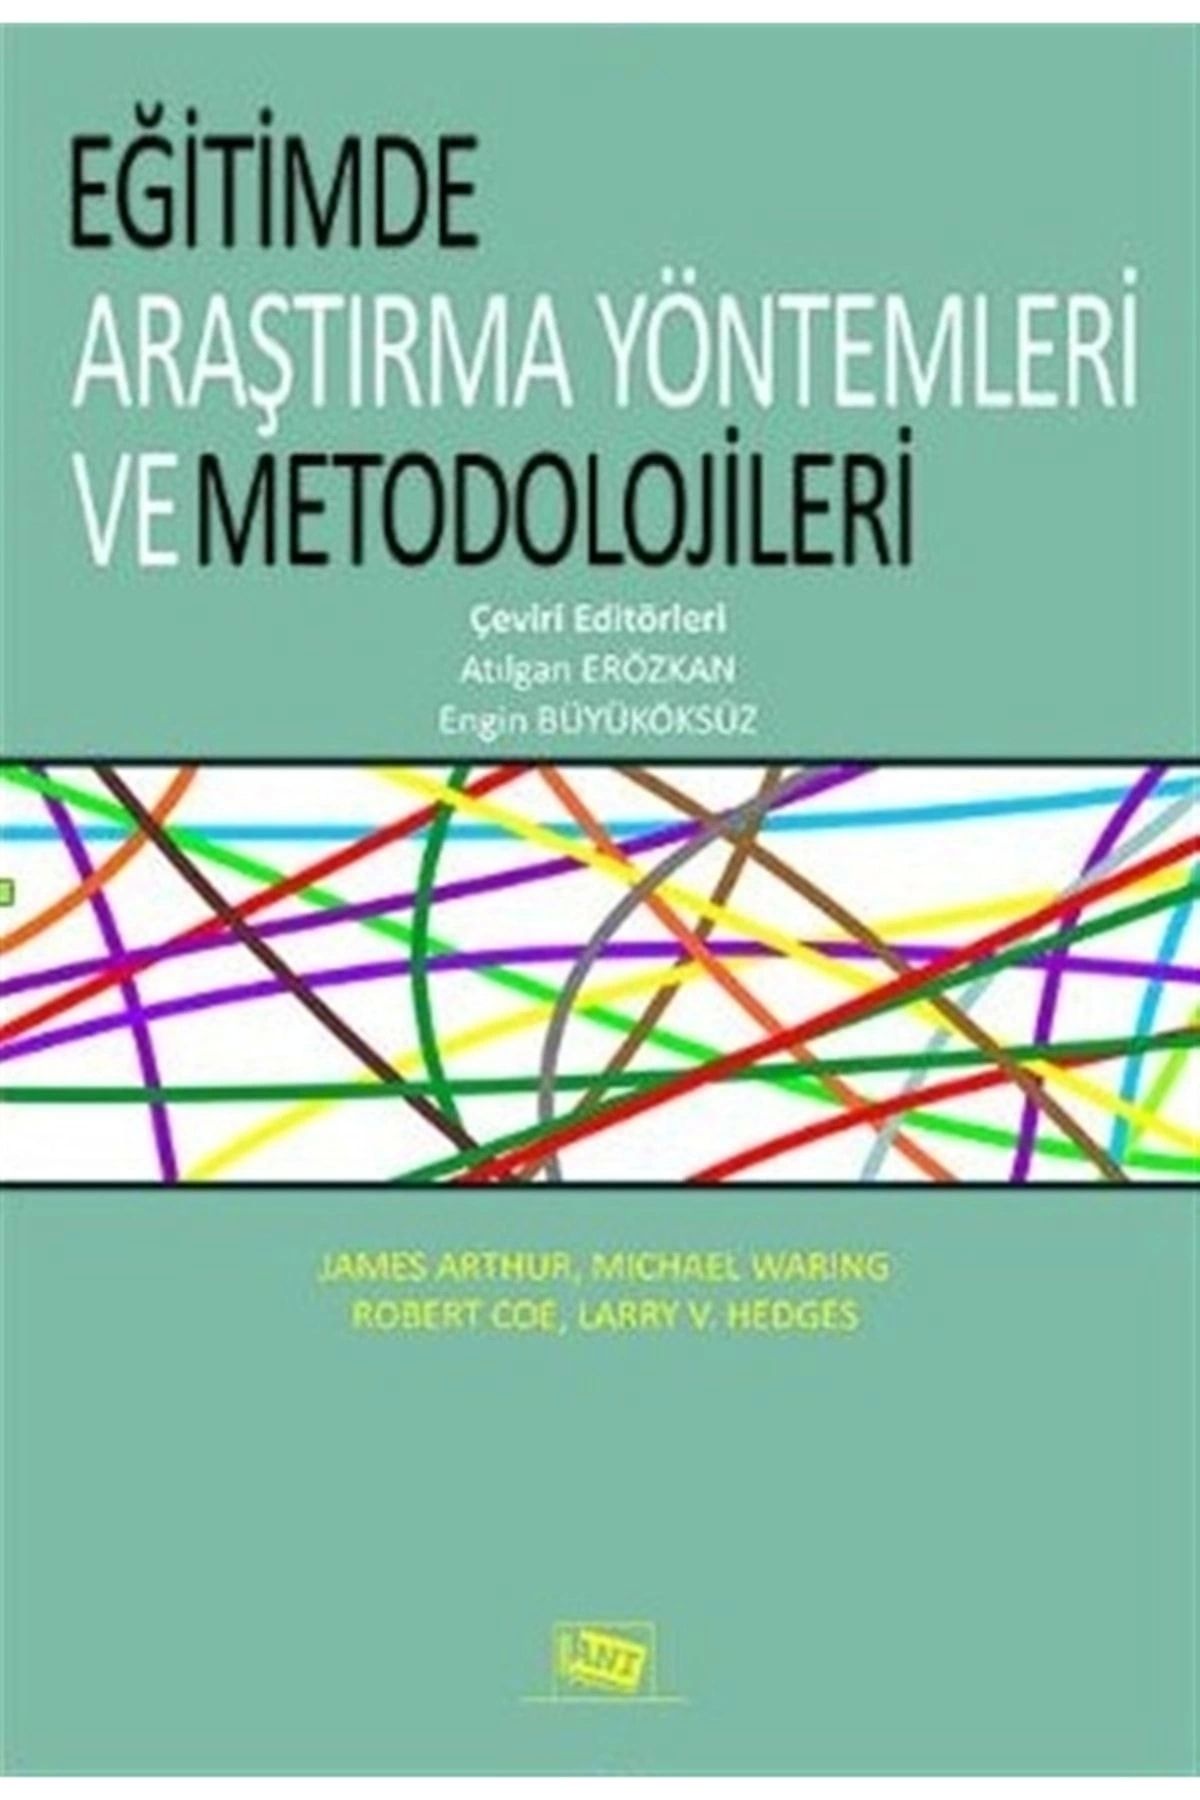 Anı Yayınları Eğitimde Araştırma Yöntemleri Ve Metedolojileri - Atılgan Erözkan 9786051701608